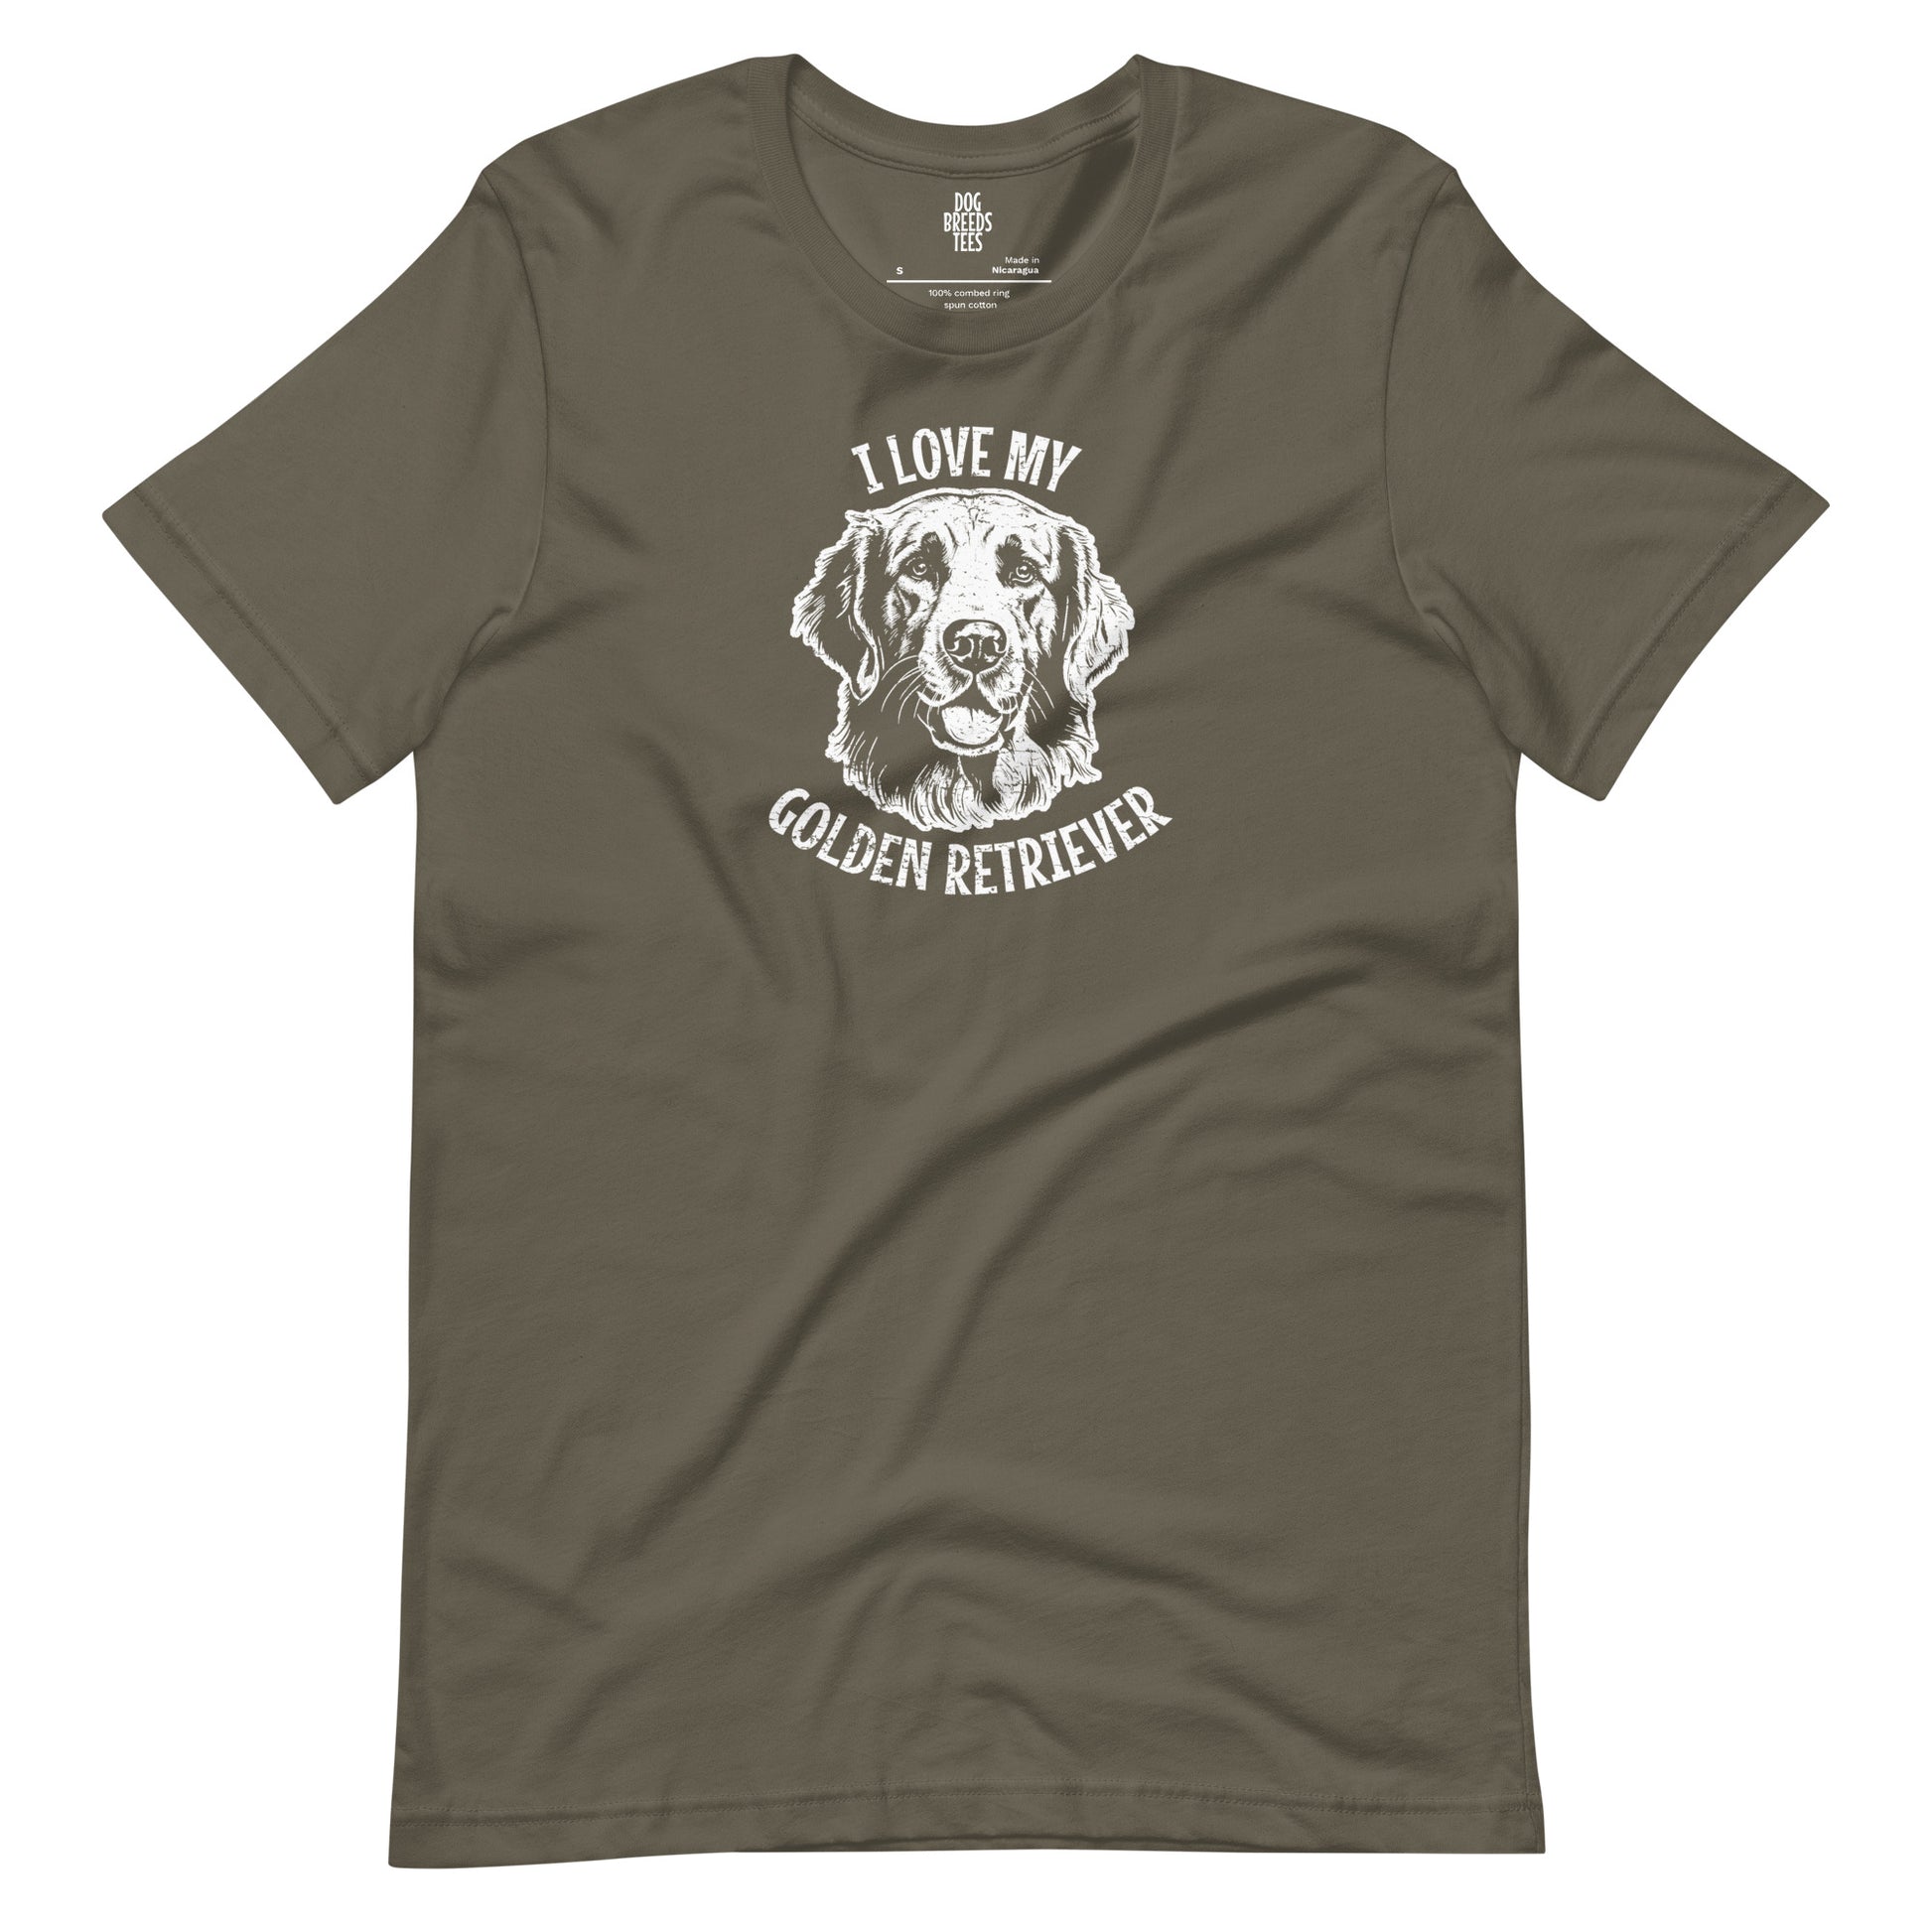 Golden Retriever Shirt, Golden Retriever gift, gift for dog mom, custom dog gift, dog owner gift, pet memorial gift